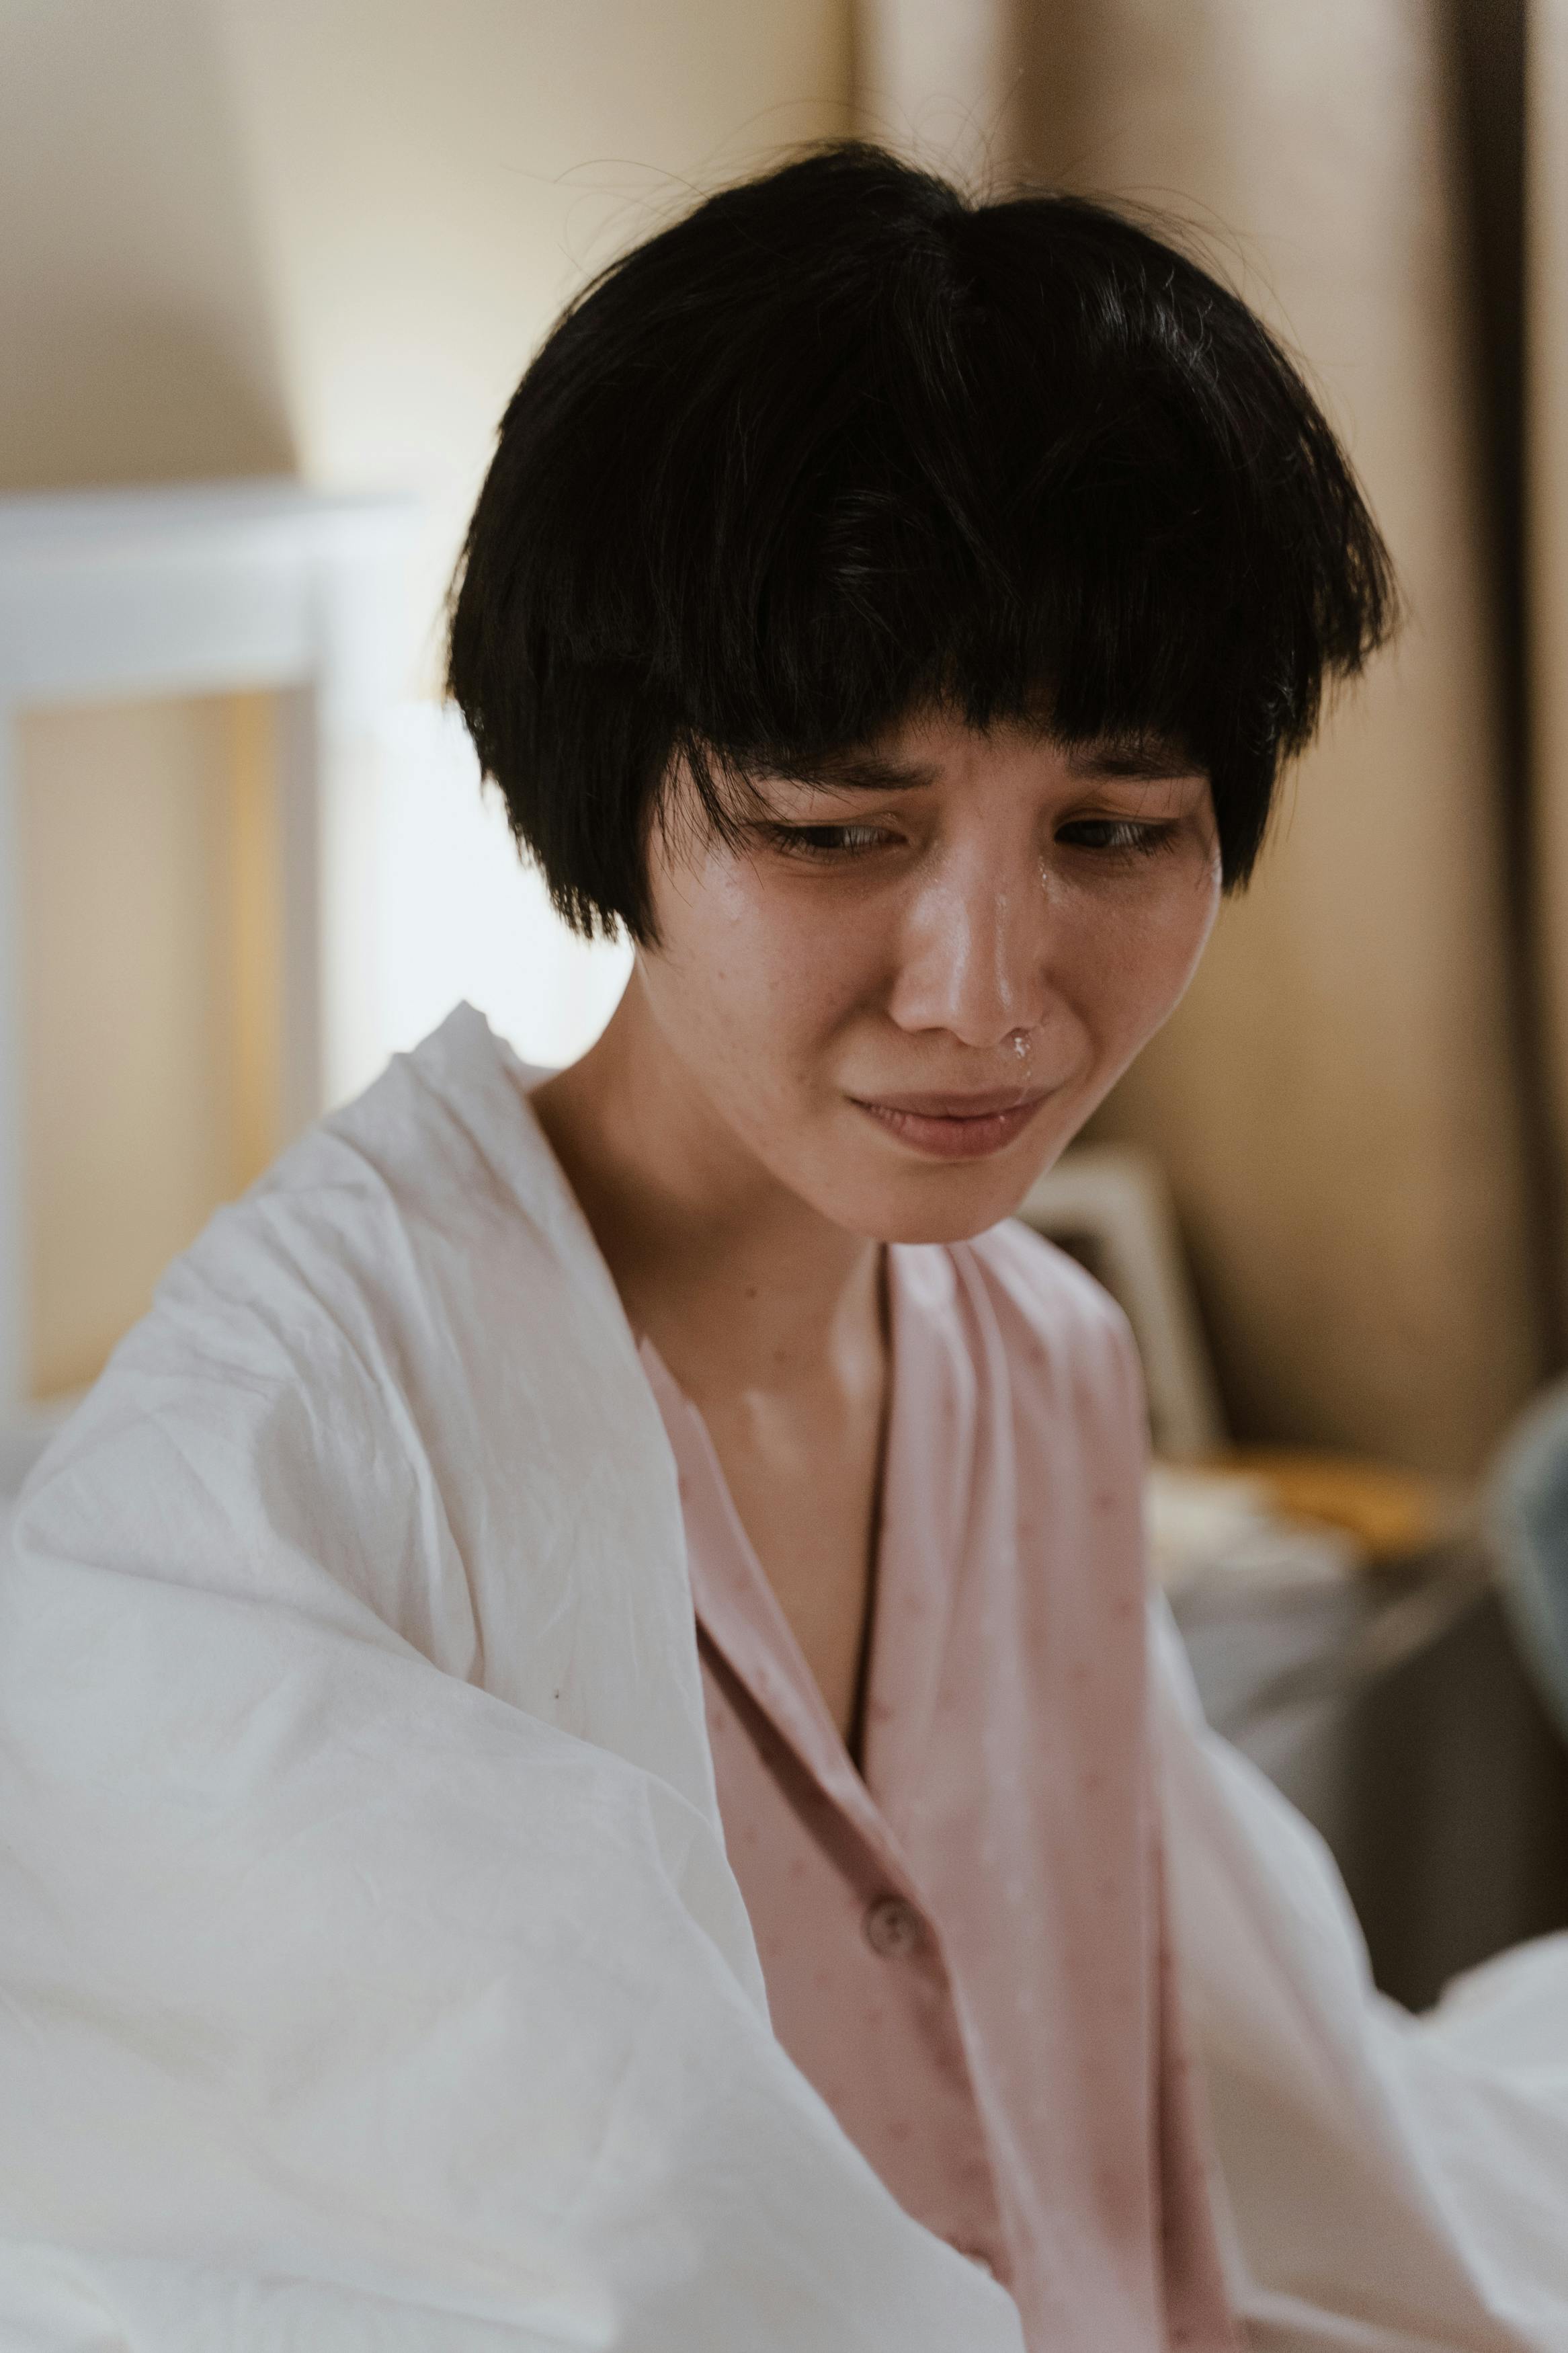 Eine weinende Frau | Quelle: Pexels